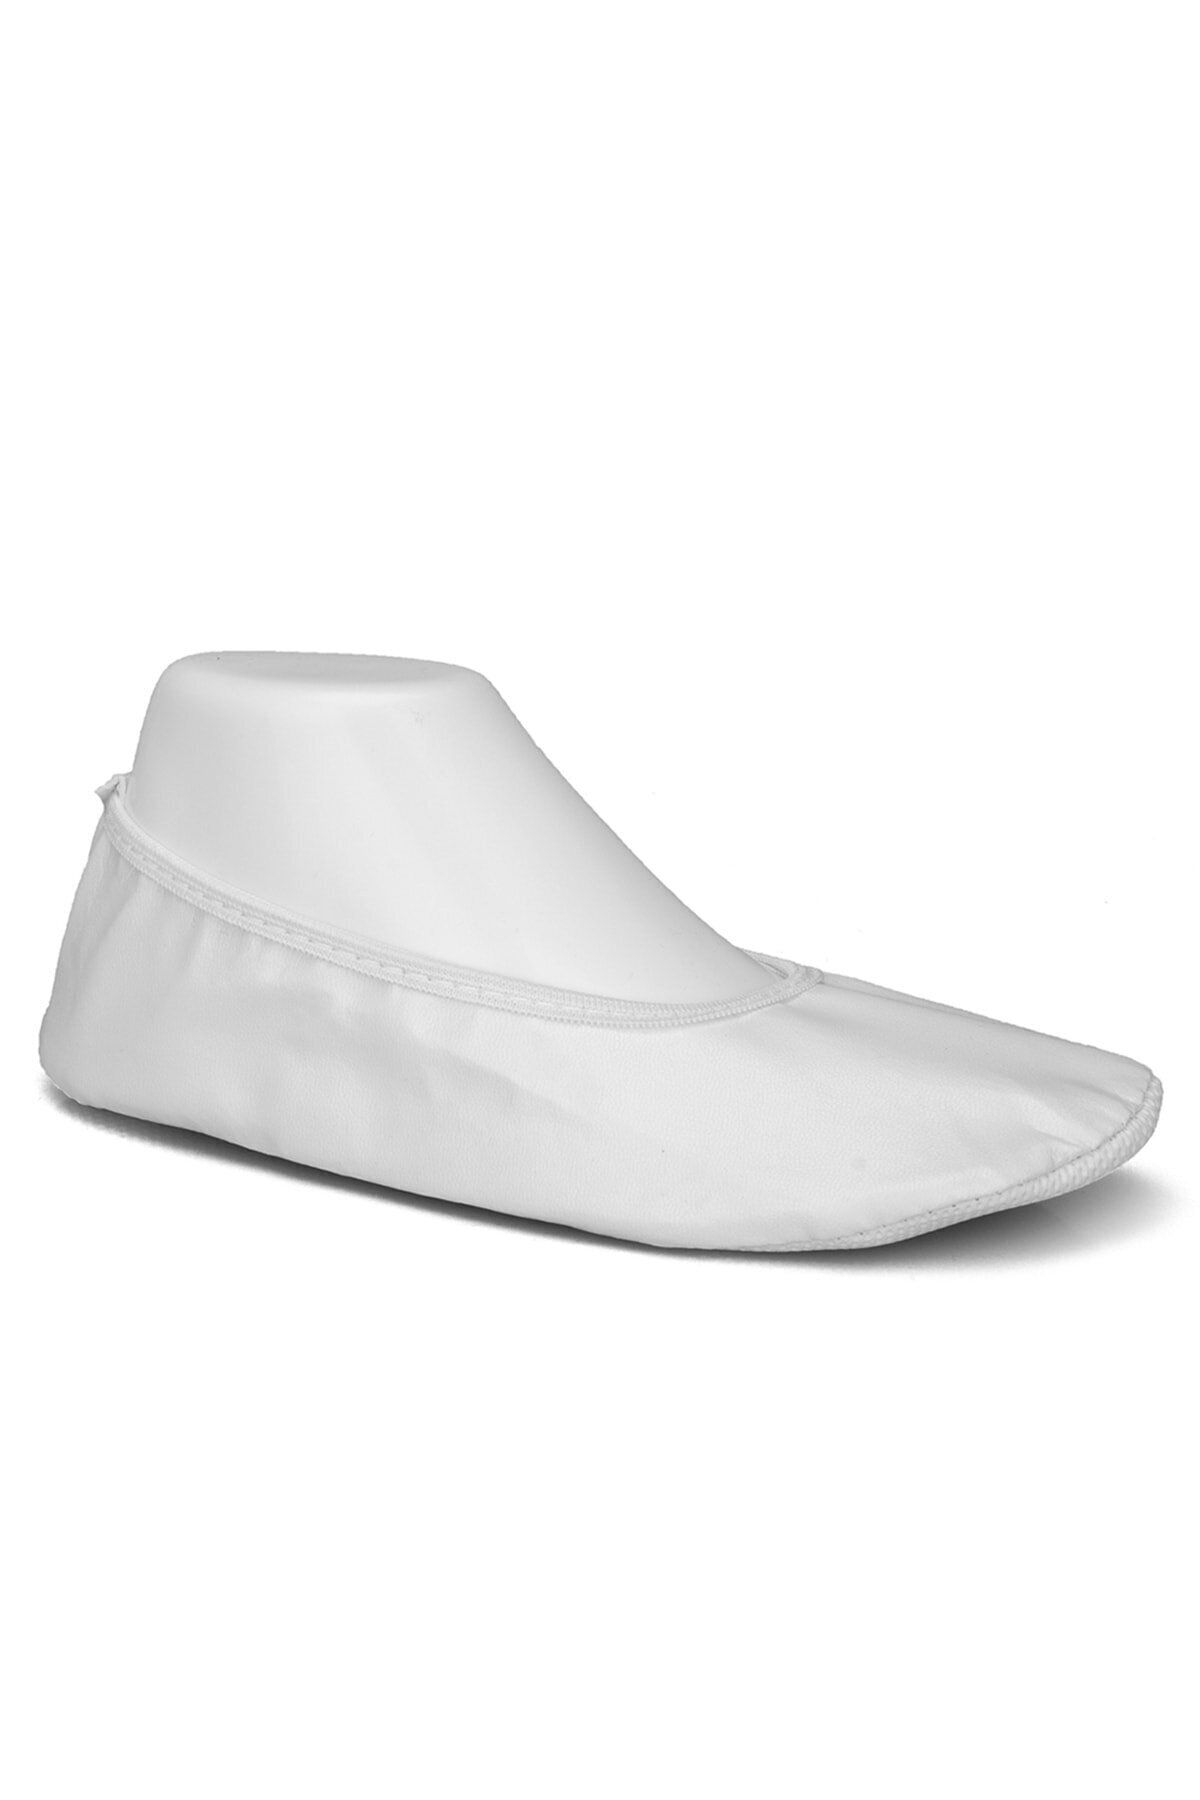 TıkTık AL Pisipisi Beyaz Gösteri Ayakkabısı Pisi Pisi Babet Ayakkabı